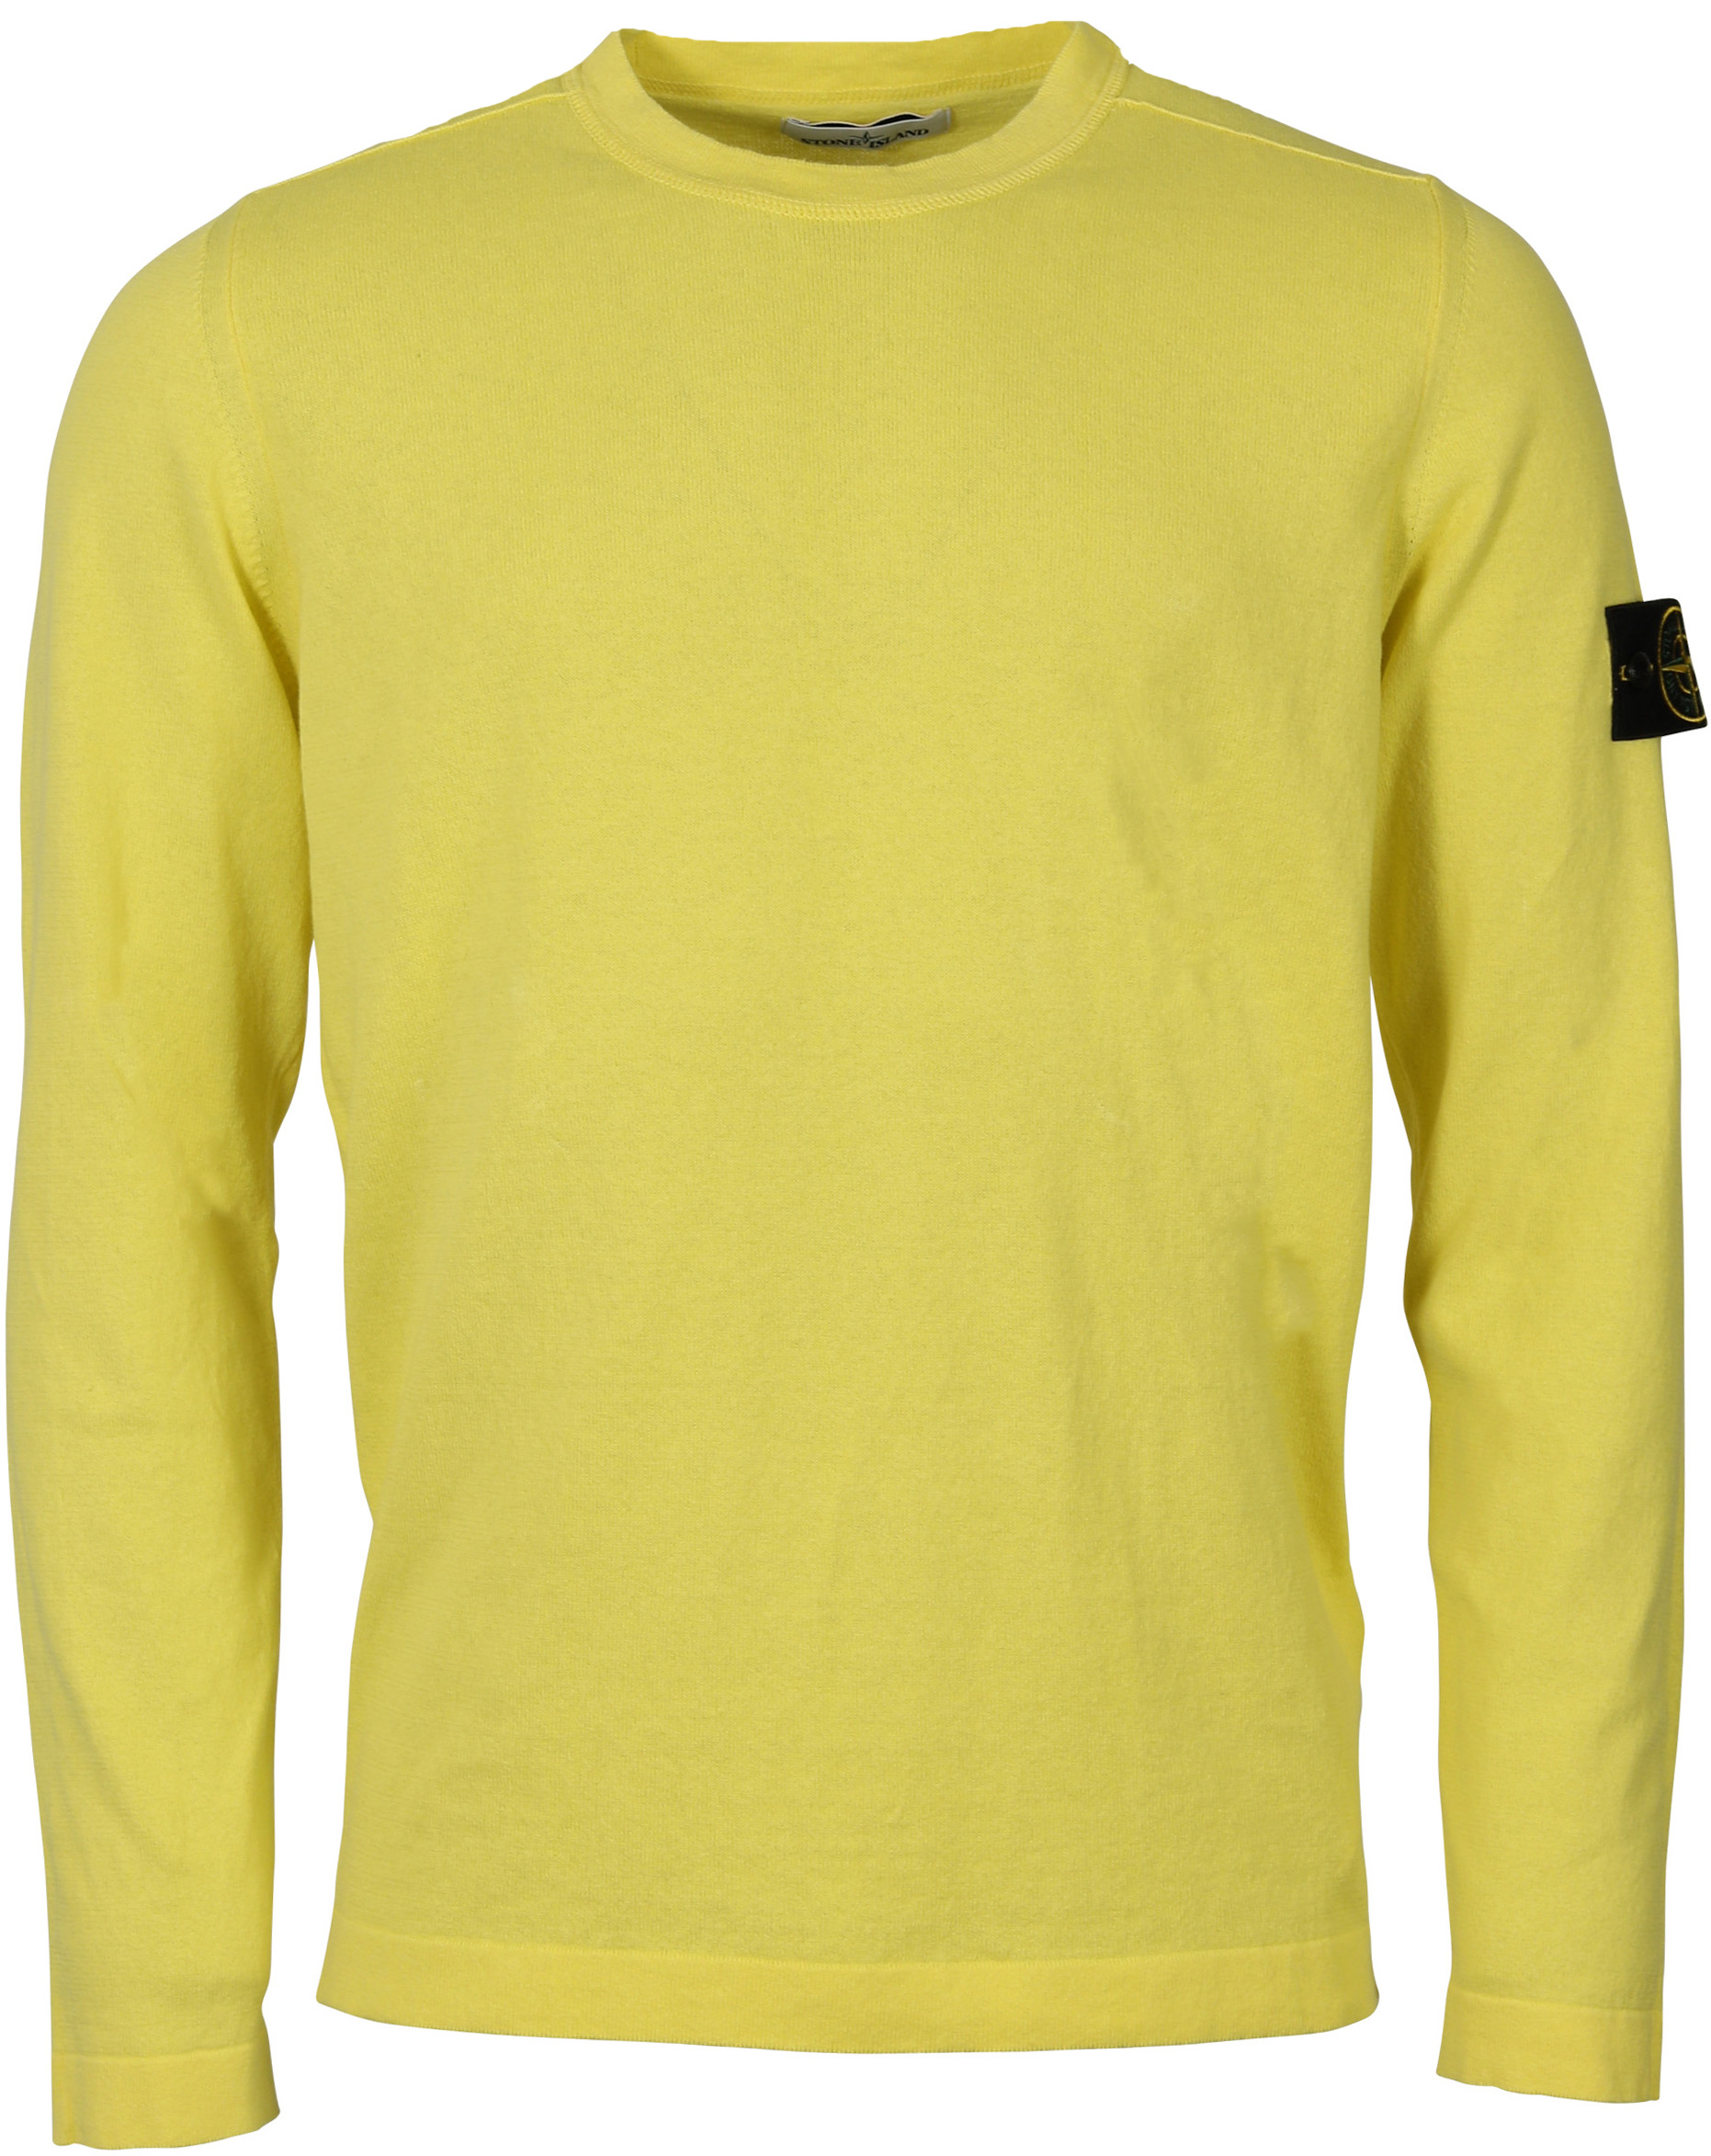 Stone Island Knit Sweater Yellow M